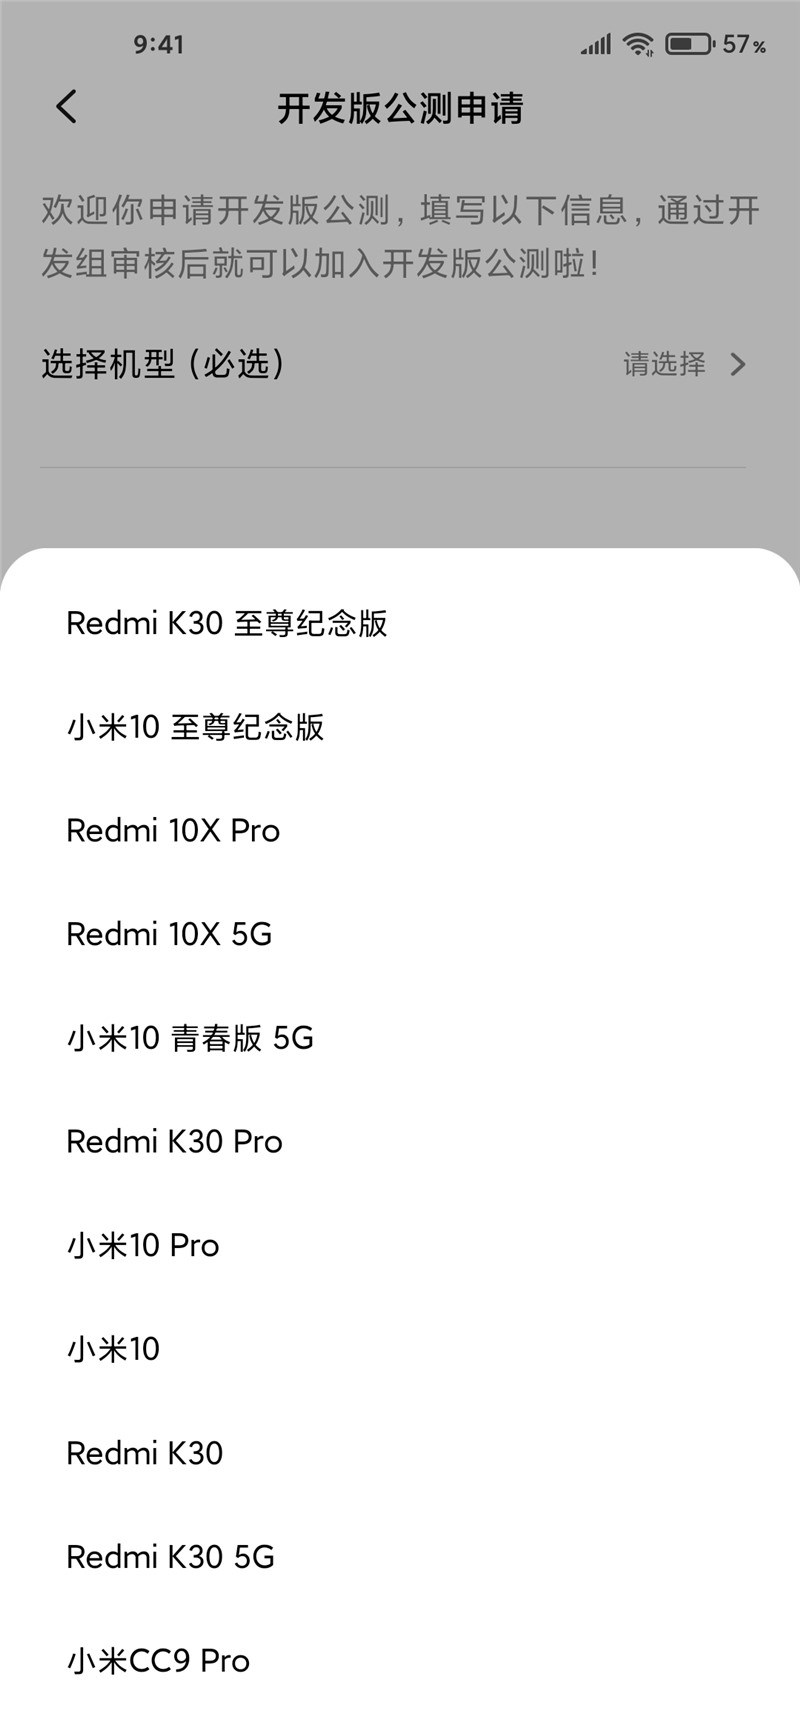 红米K30至尊纪念版怎么申请MIUI12内测